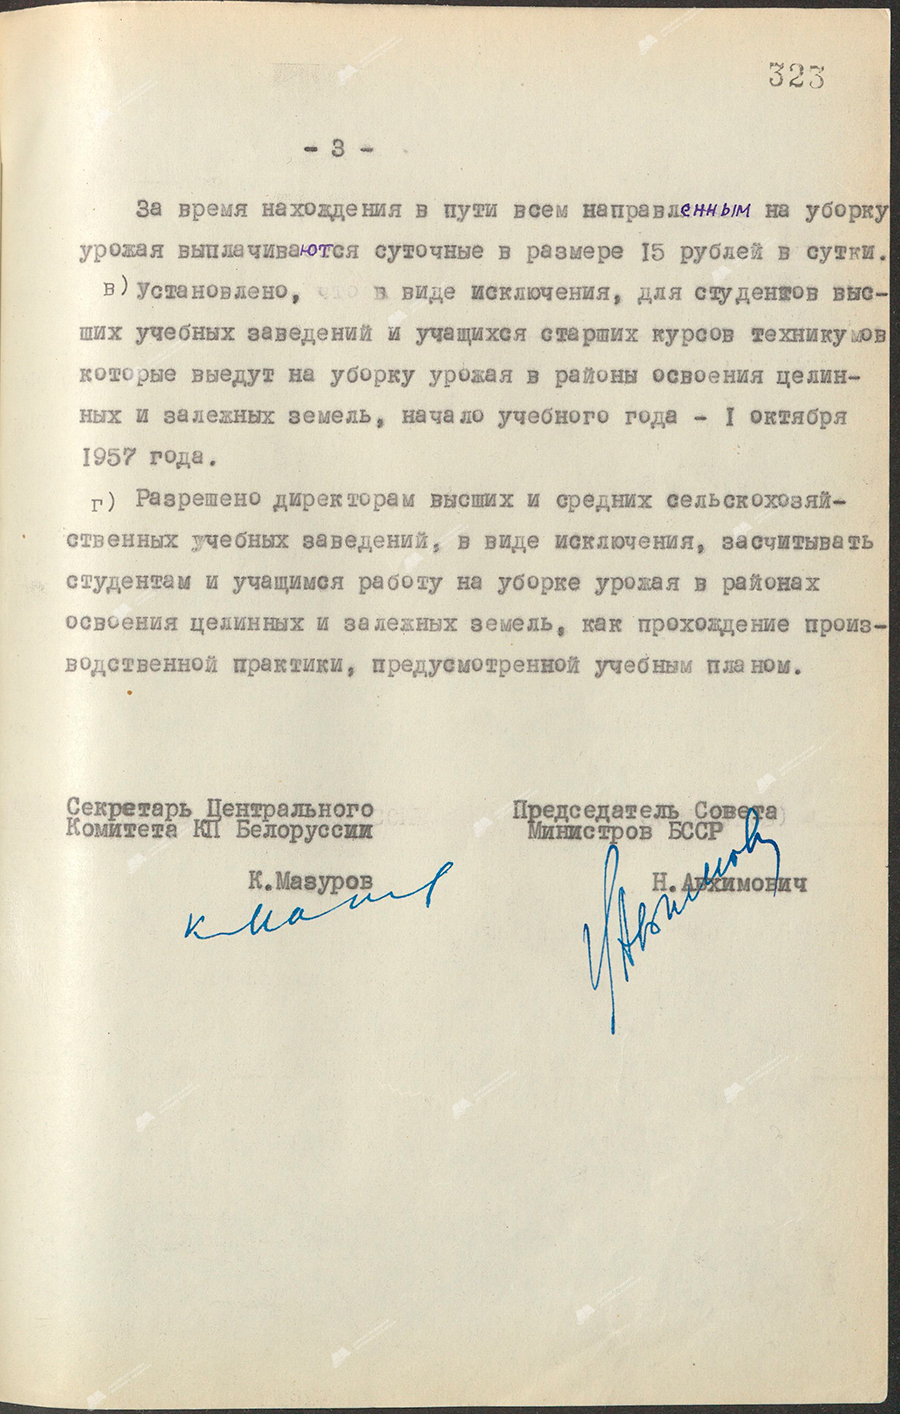 Beschluss Nr. 373 des Zentralkomitees des KP von Belarus und des Ministerrates der belarussischen SSR «Über die Teilnahme der Komsomol und der Jugend der Republik an der Ernte in den Gebieten der Erschließung von reinen und einlagigen Gebieten im Jahr 1957»-с. 2